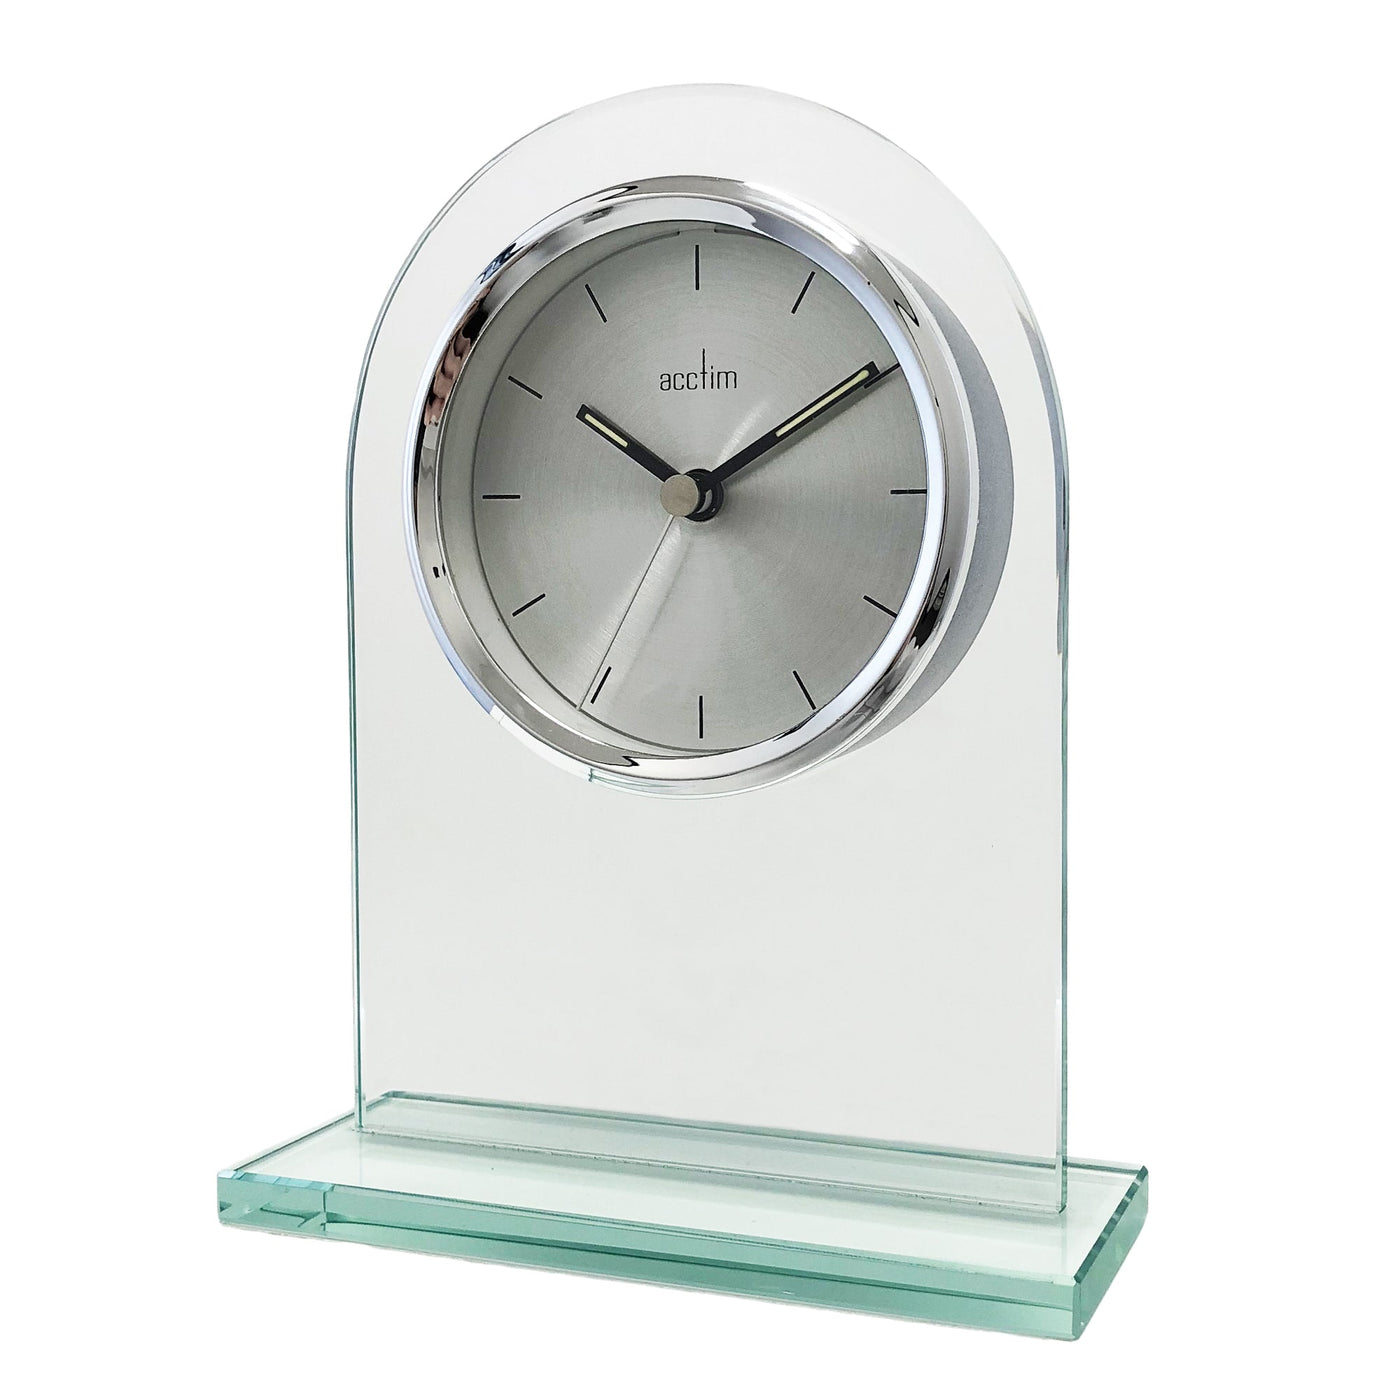 Acctim Ledburn Arched Mantle Clock Brushed Silver - timeframedclocks